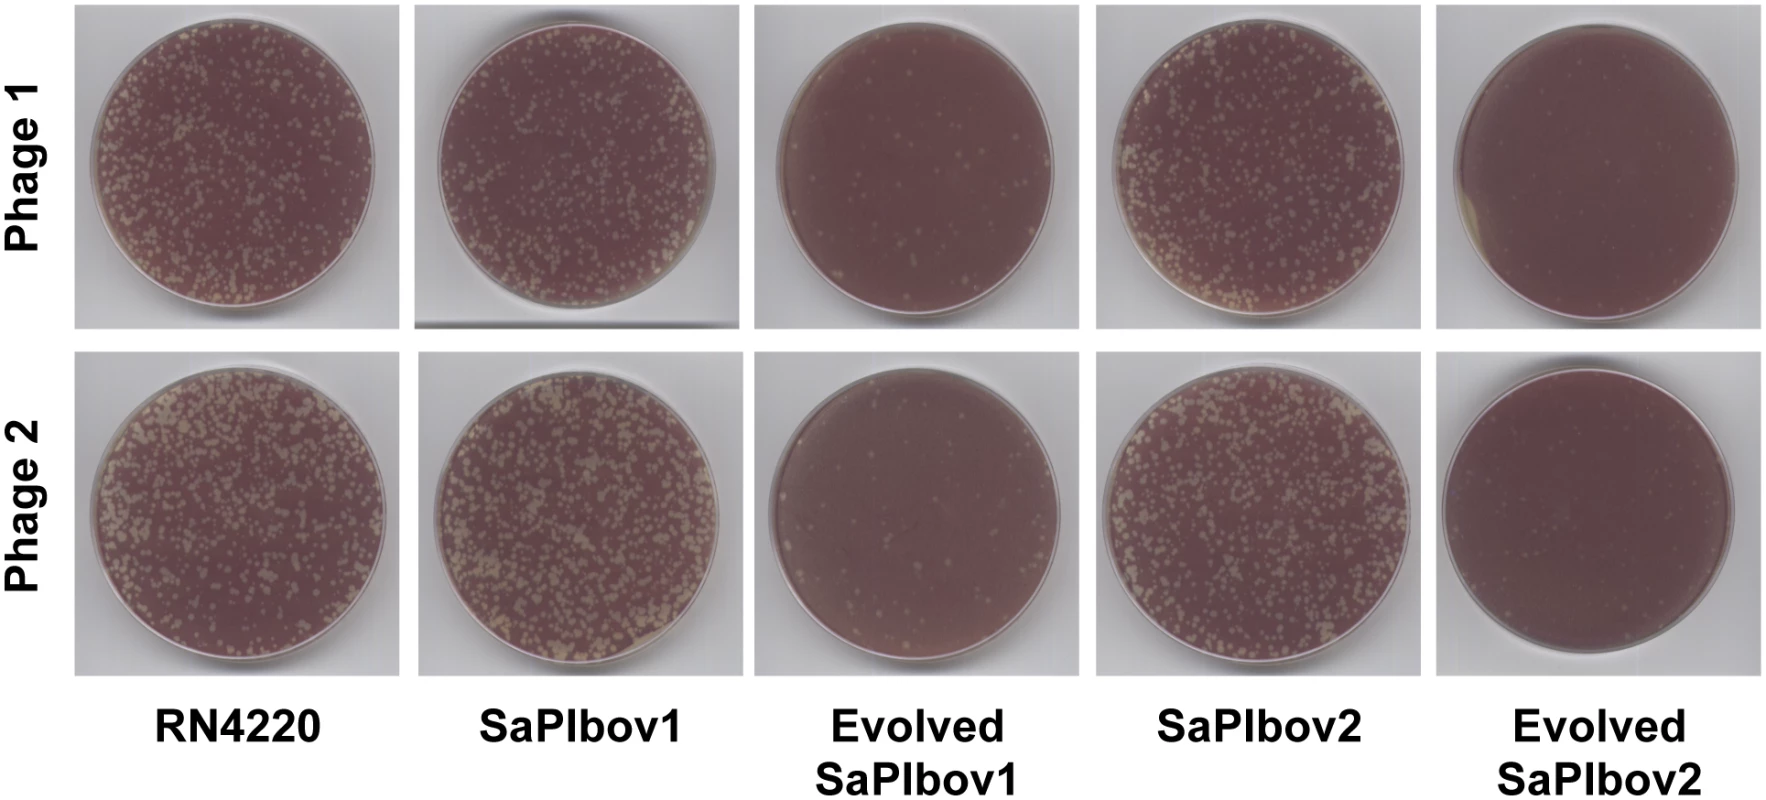 SaPI-driven phage evolution occurs <i>in vivo</i>.